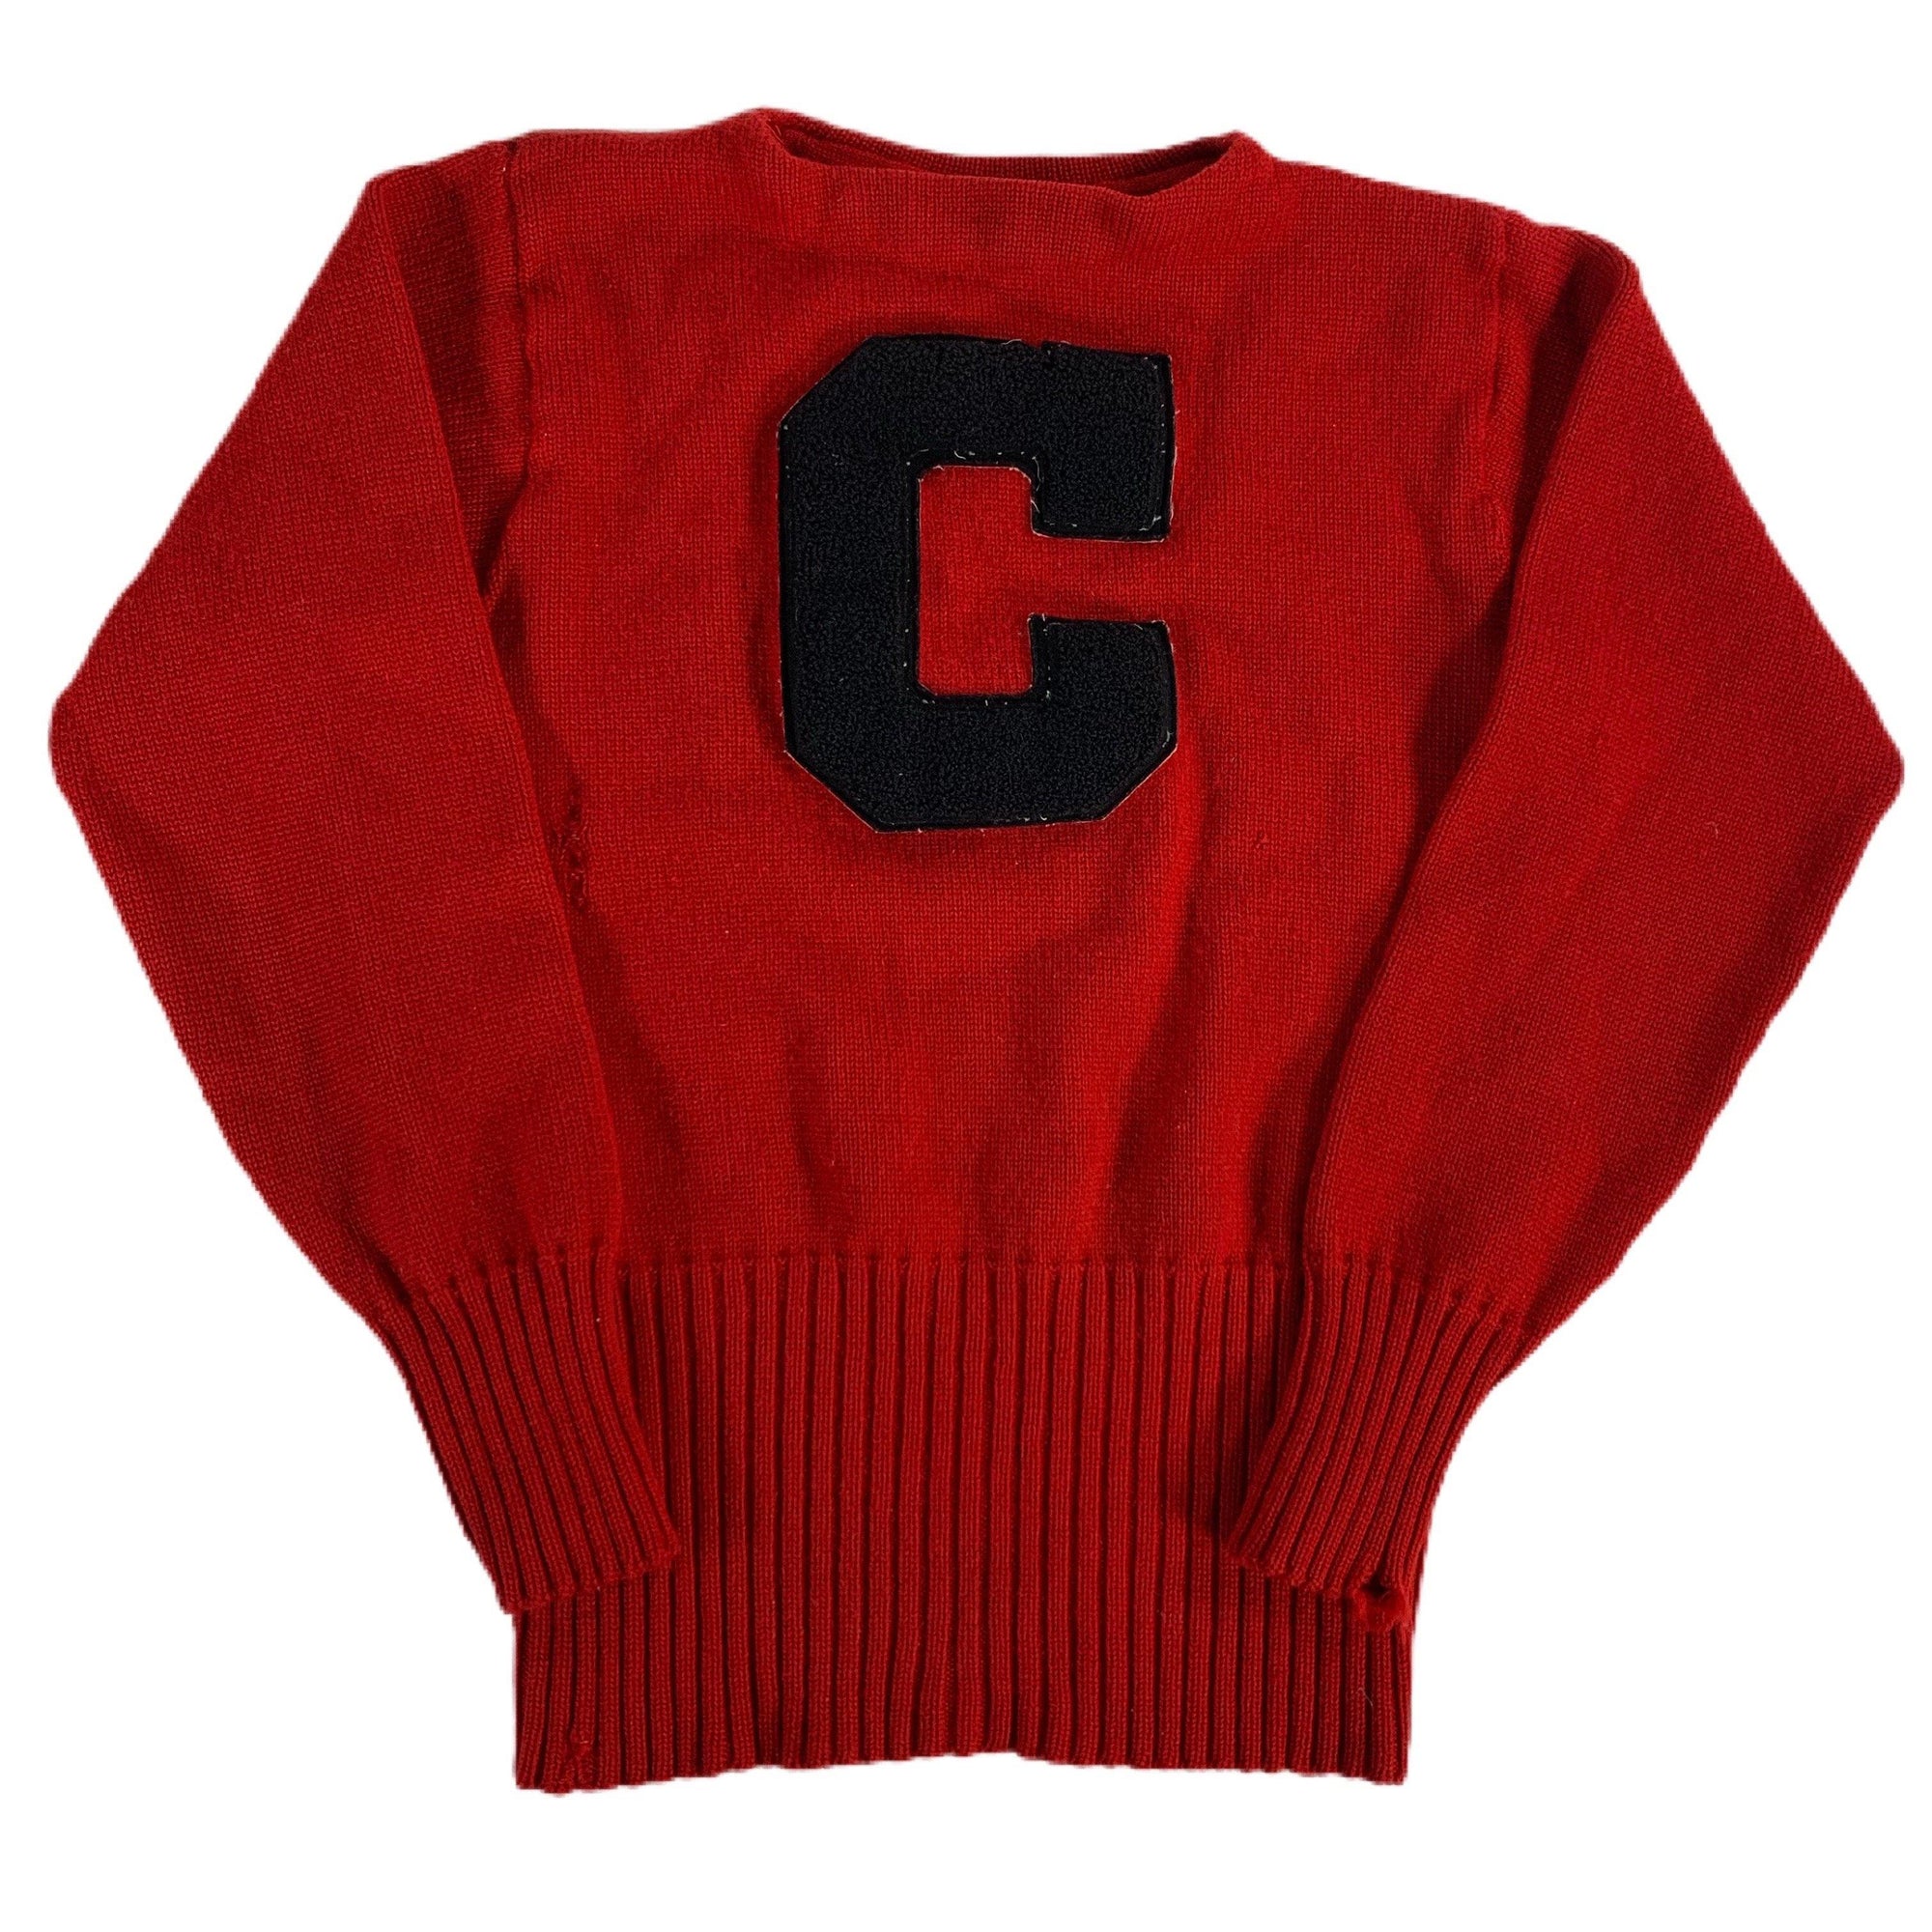 Vintage Cornell "Letter" Wool Knit Sweater - jointcustodydc